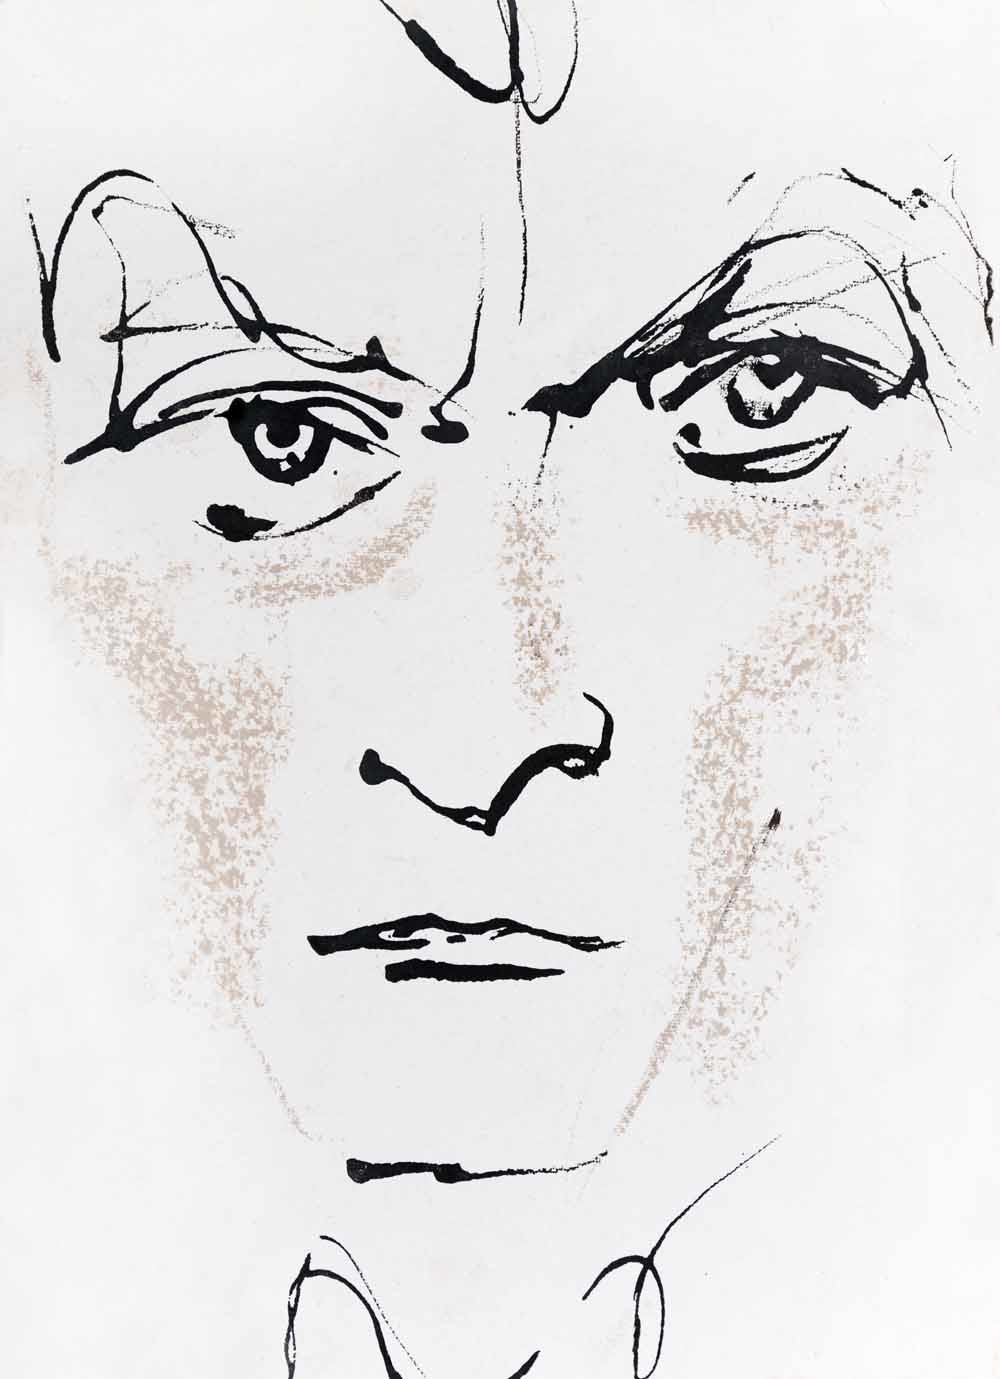 Paul Auster getekend door Ewa Klos. – © Ewa KLOS / Leemage